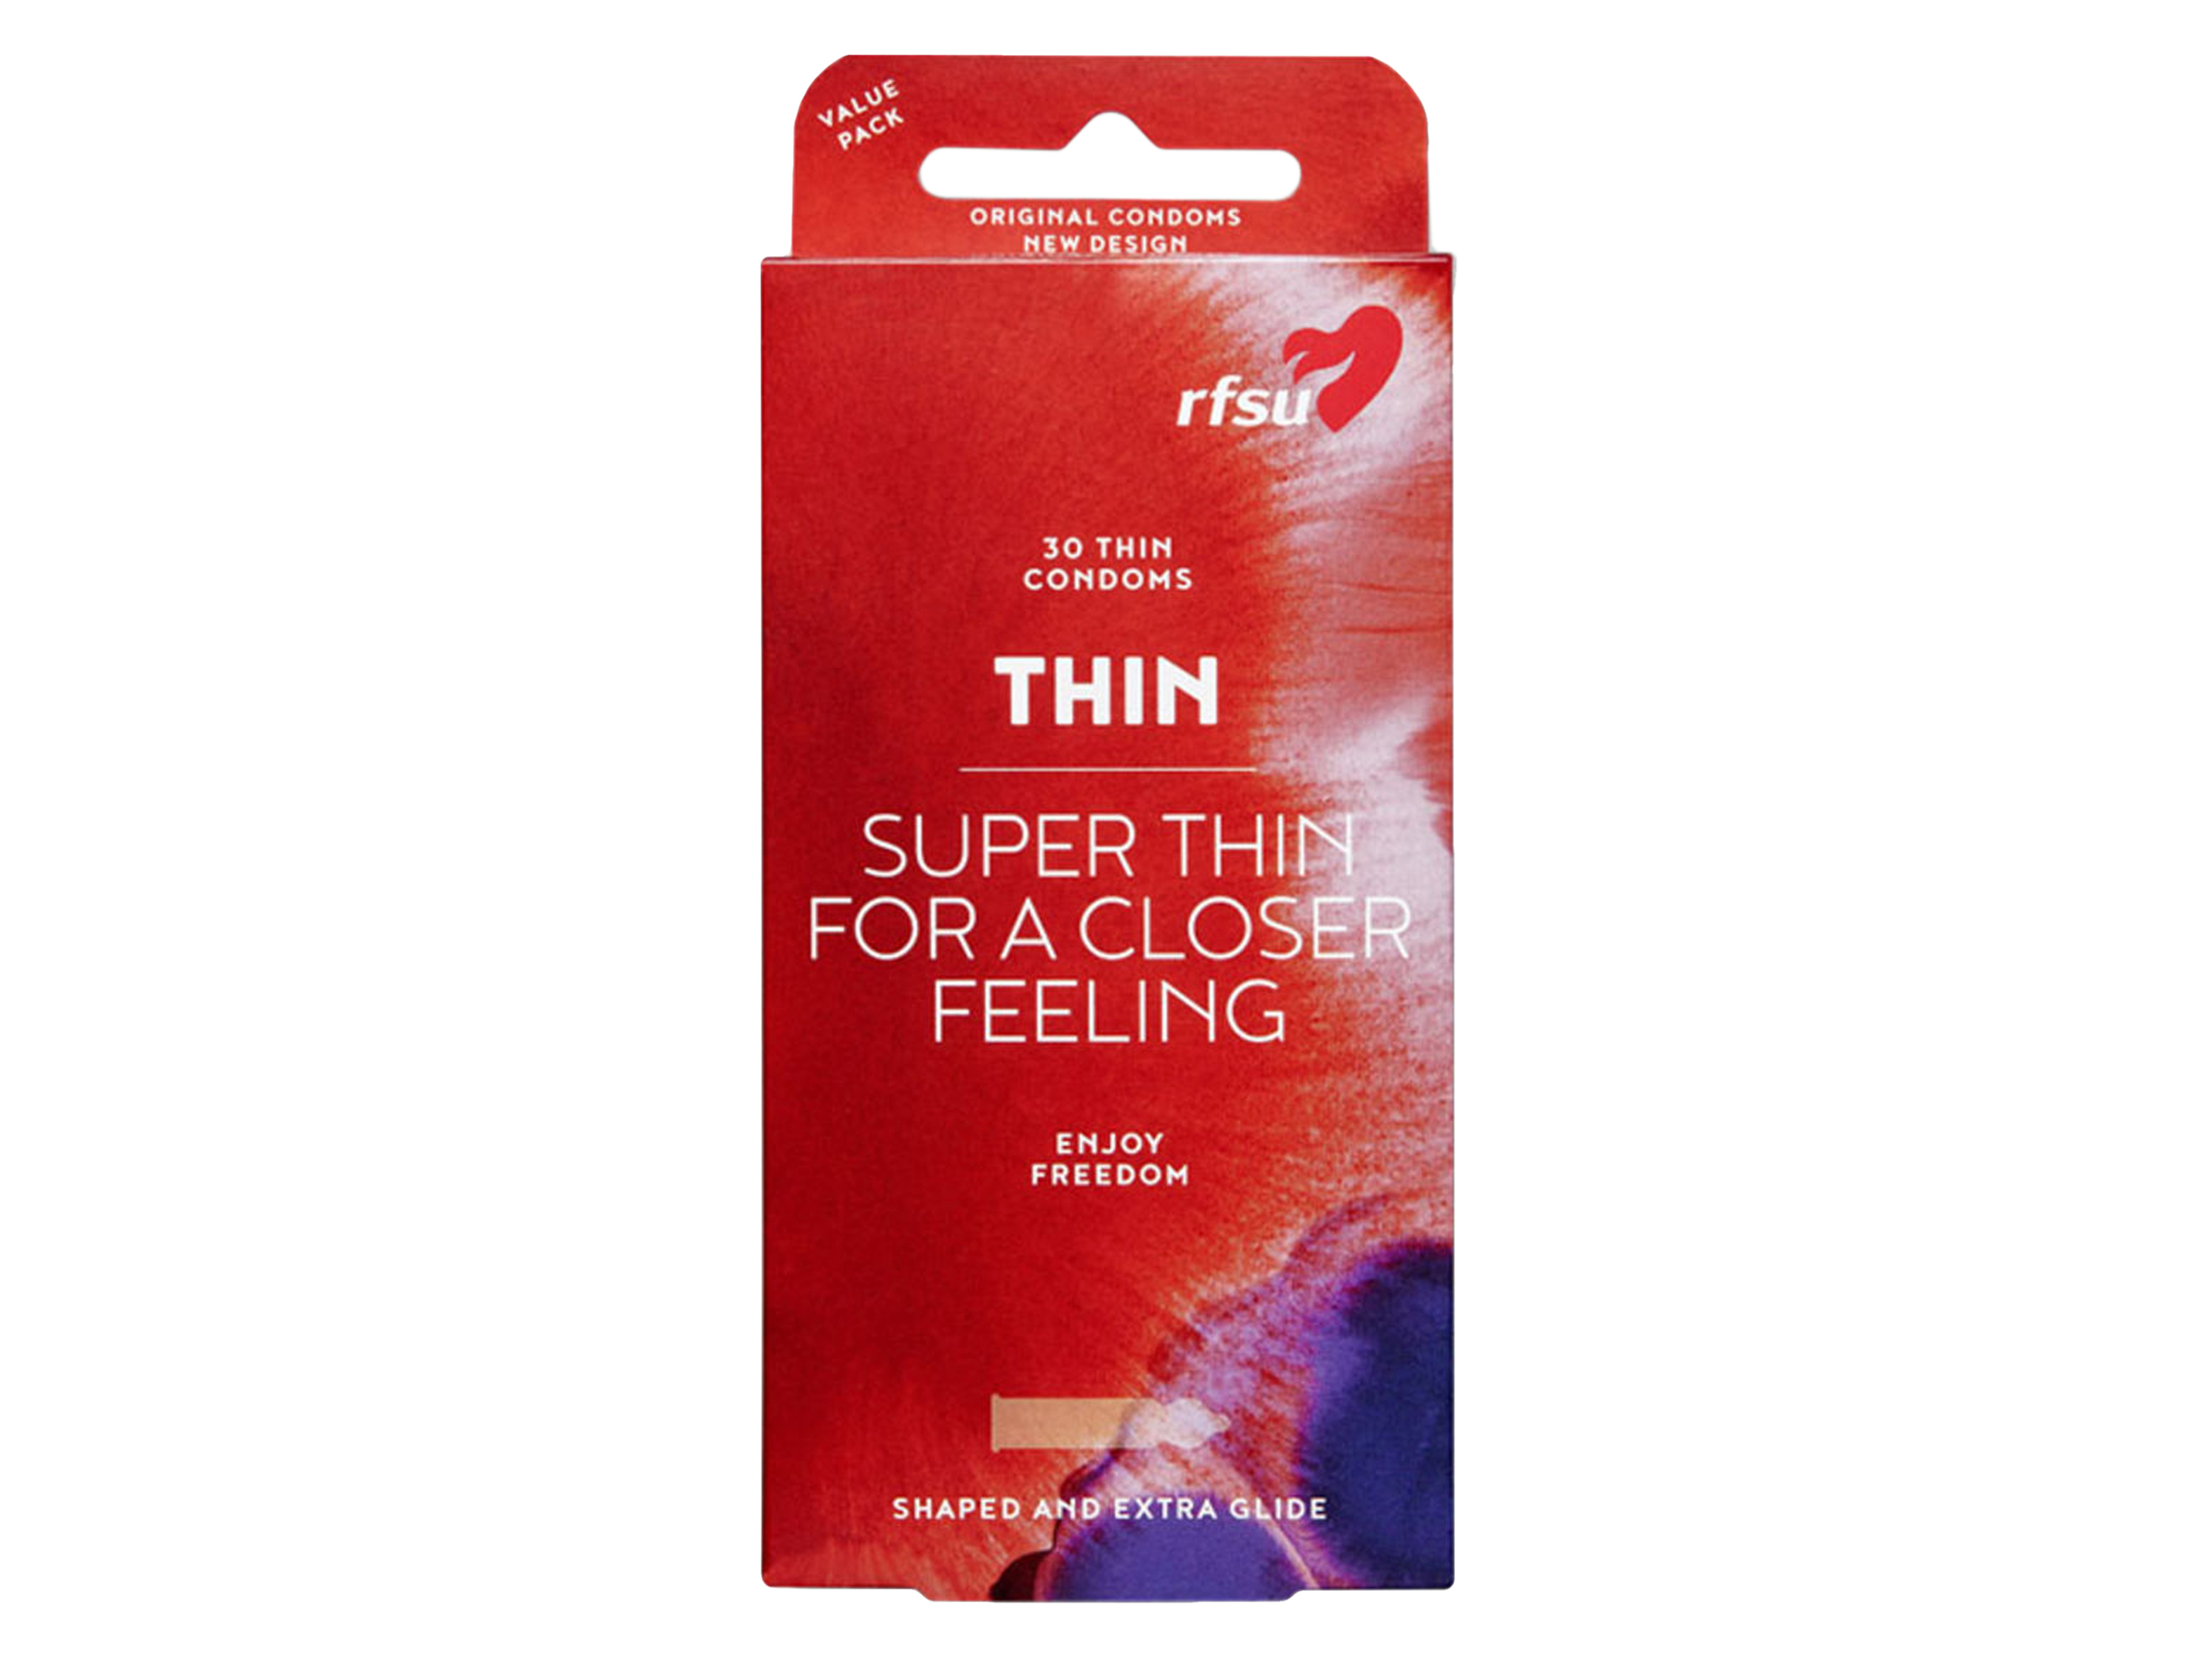 Rfsu Thin kondom, 30 stk.